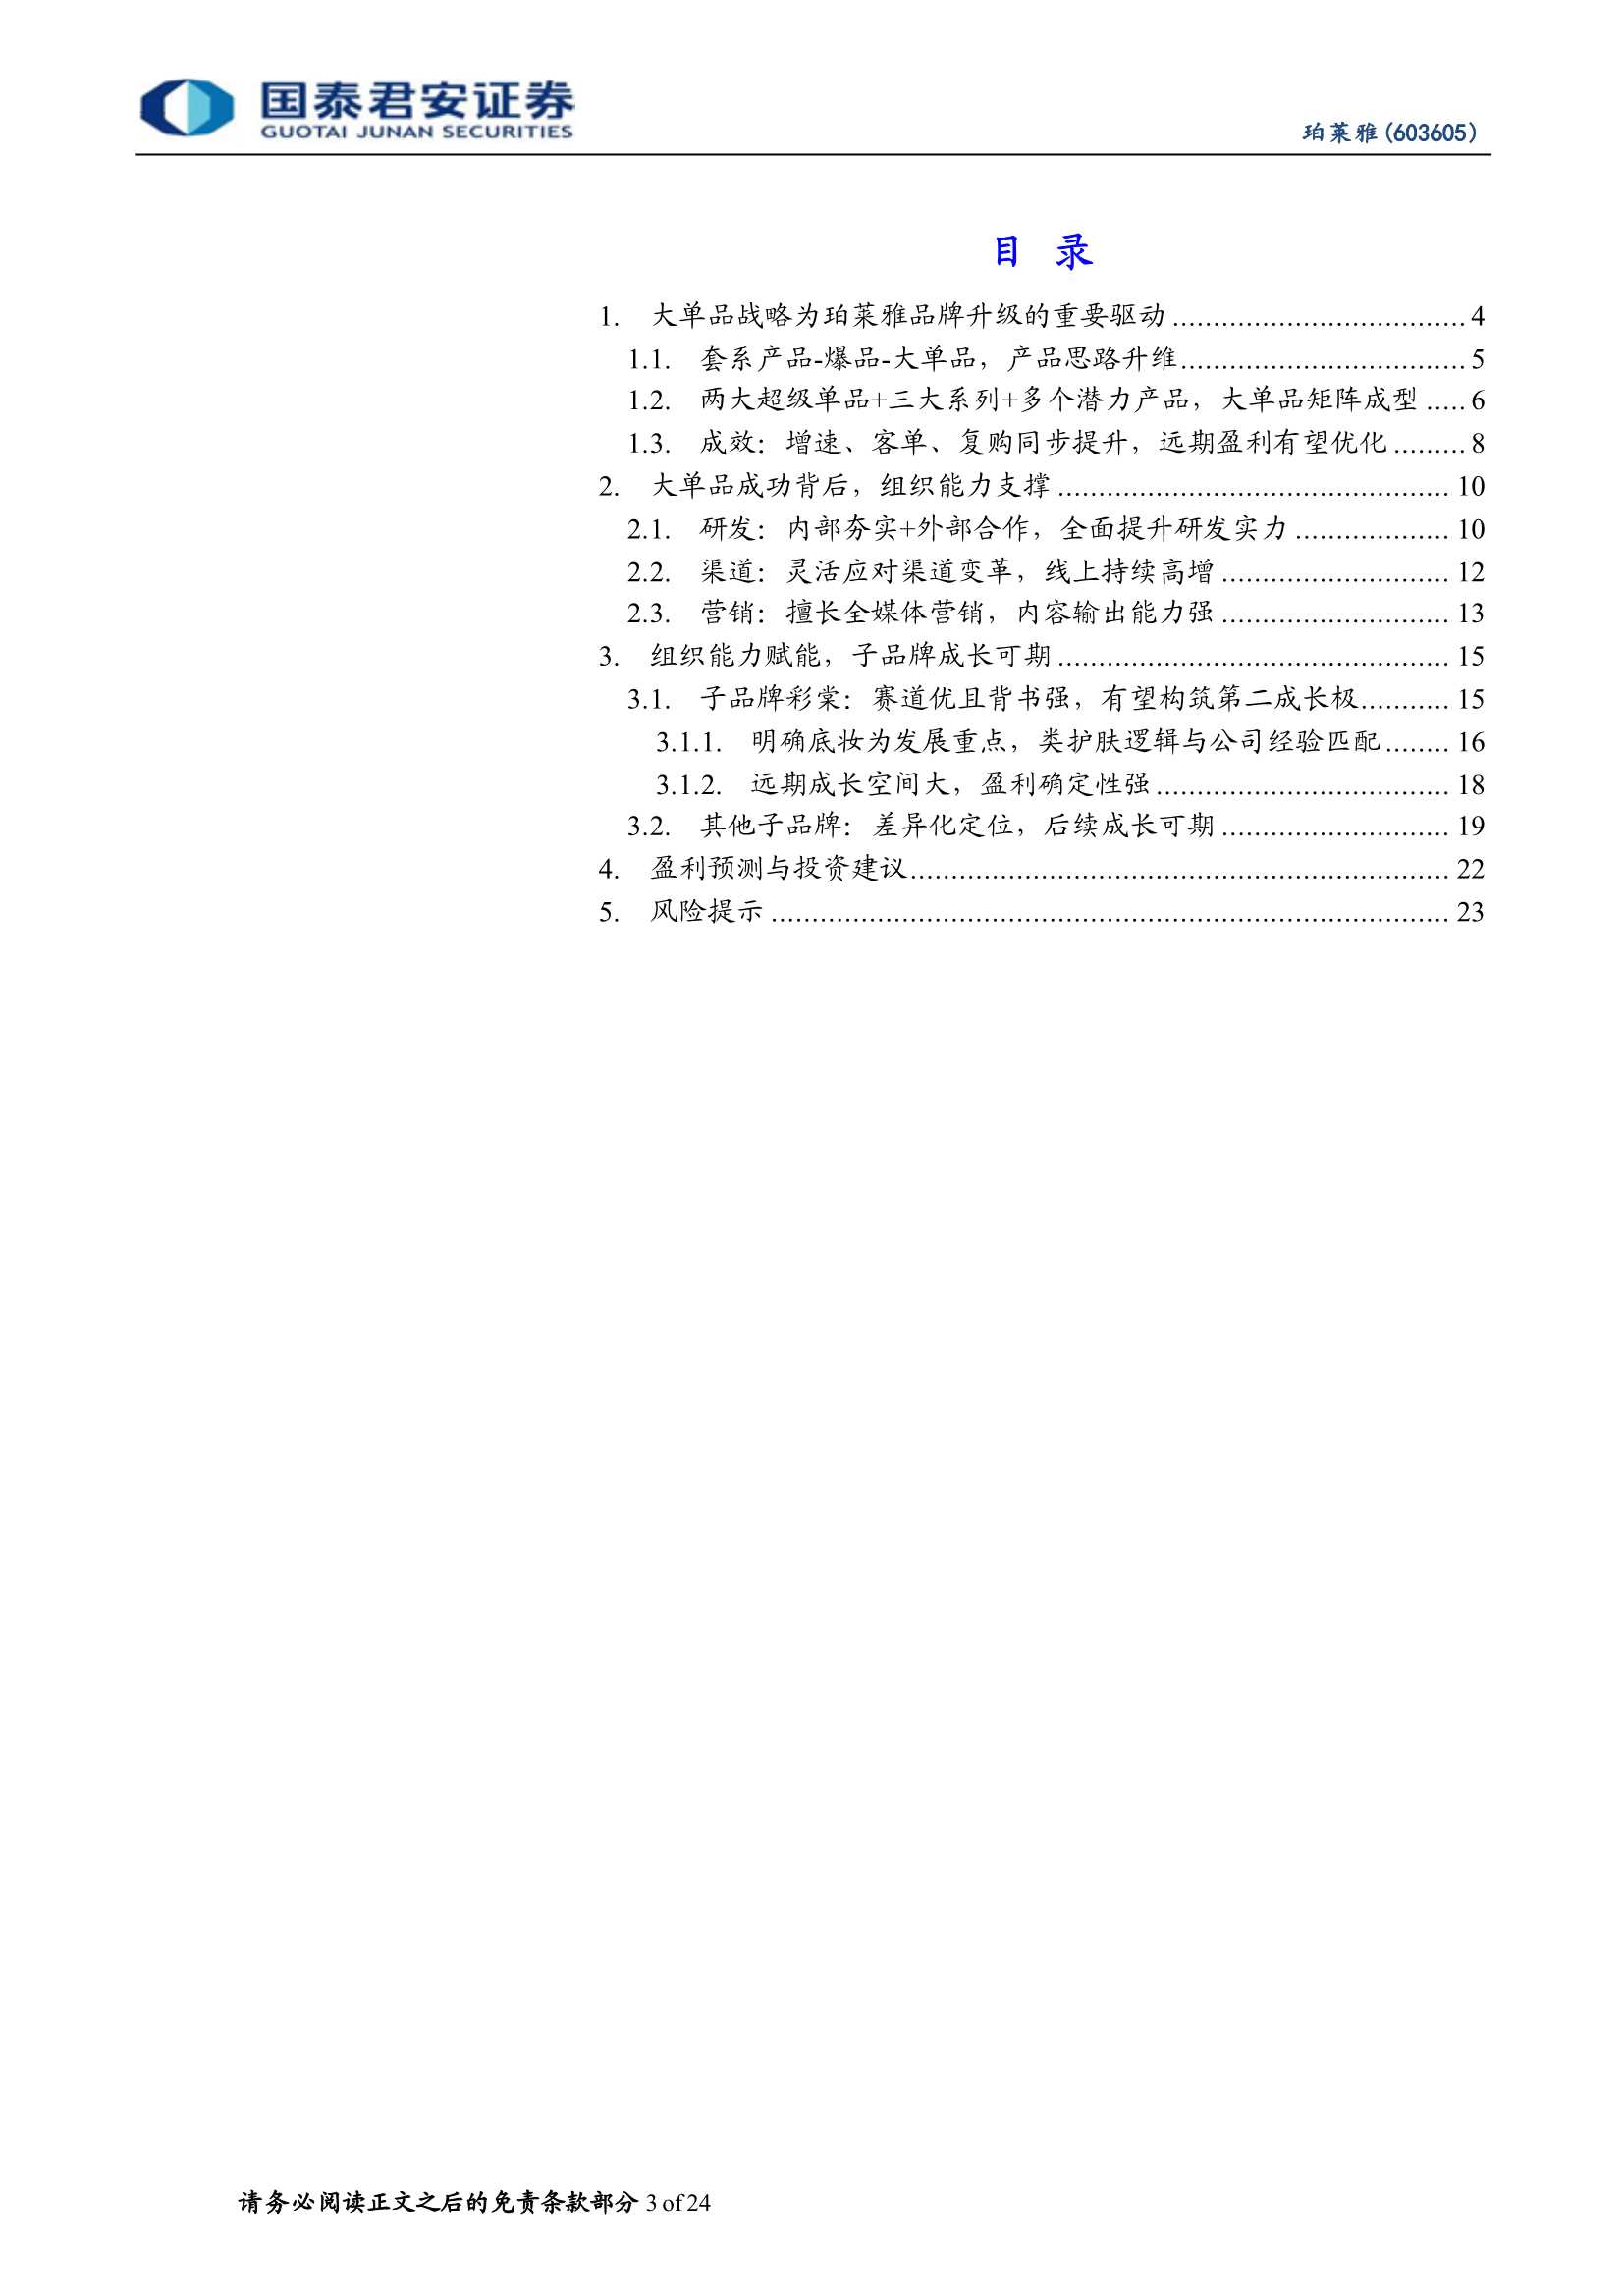 国泰君安-珀莱雅-603605-公司深度更新报告：从大单品看珀莱雅的品牌升级与组织蜕变-20220307-24页